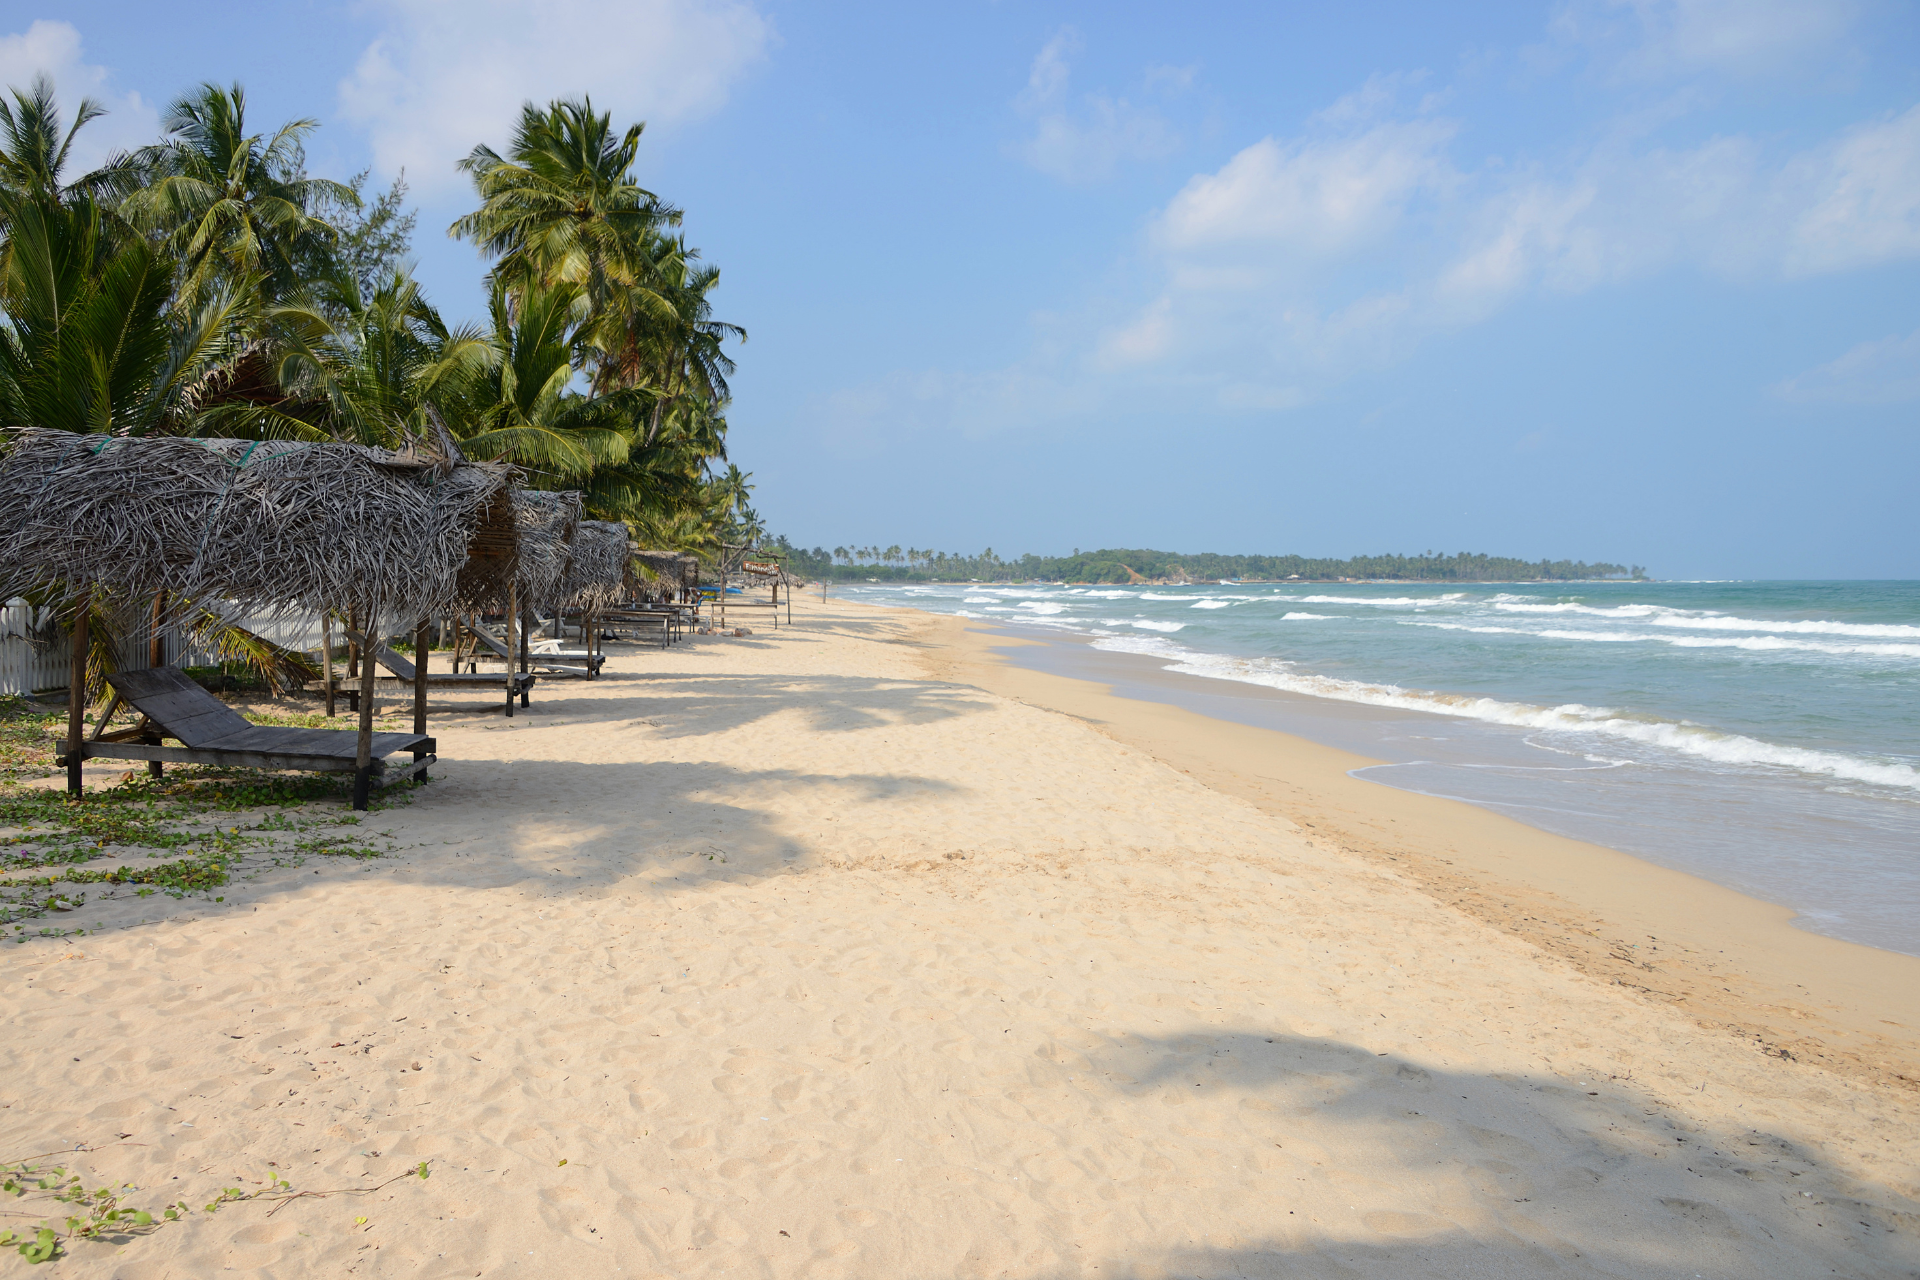 Uppuveli beach in Trincomalee, Sri Lanka